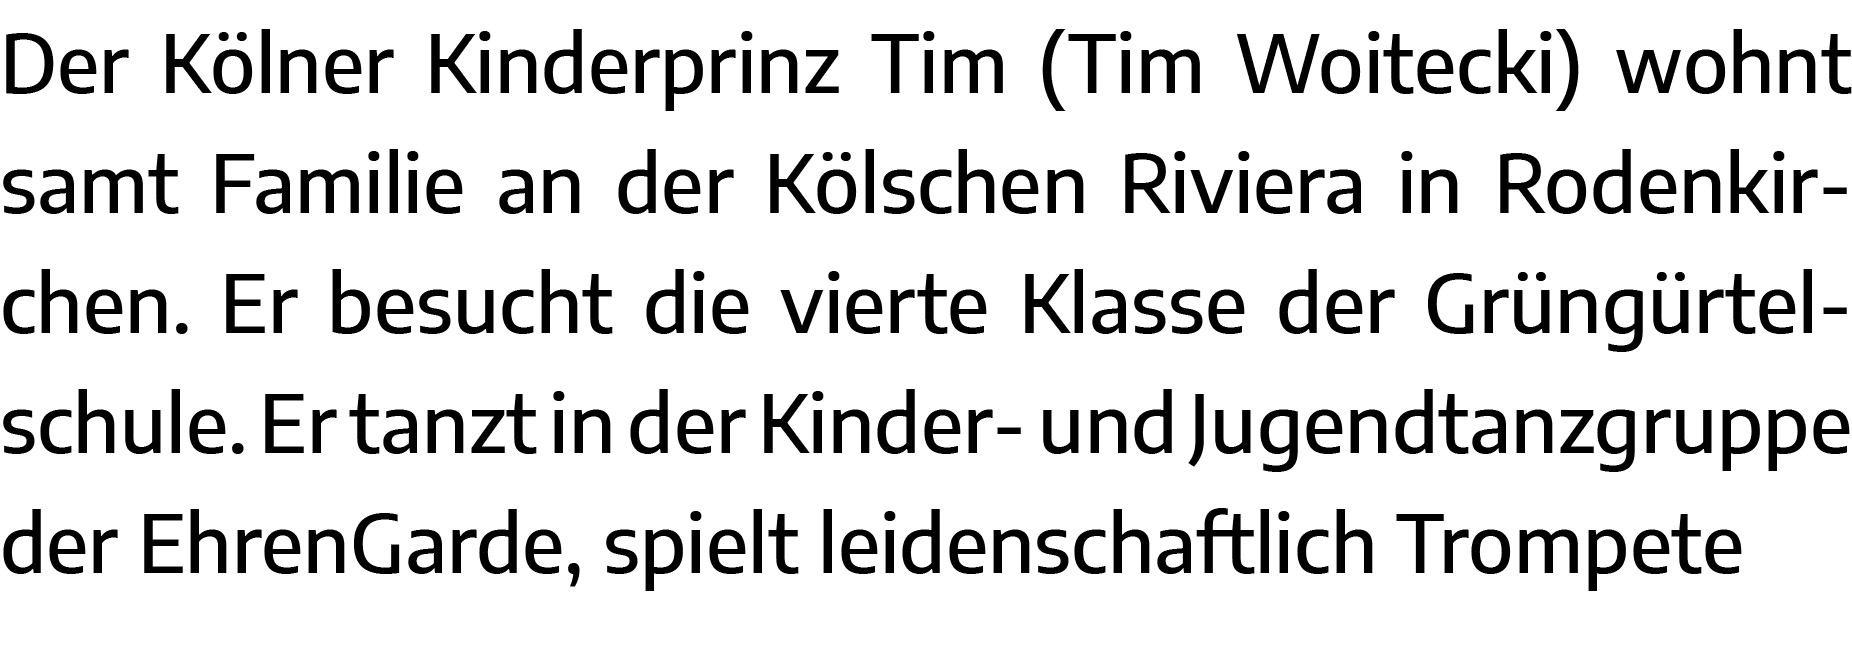 Der Kölner Kinderprinz Tim (Tim Woitecki) wohnt samt Familie an der Kölschen Riviera in Rodenkirchen  Er besucht die    